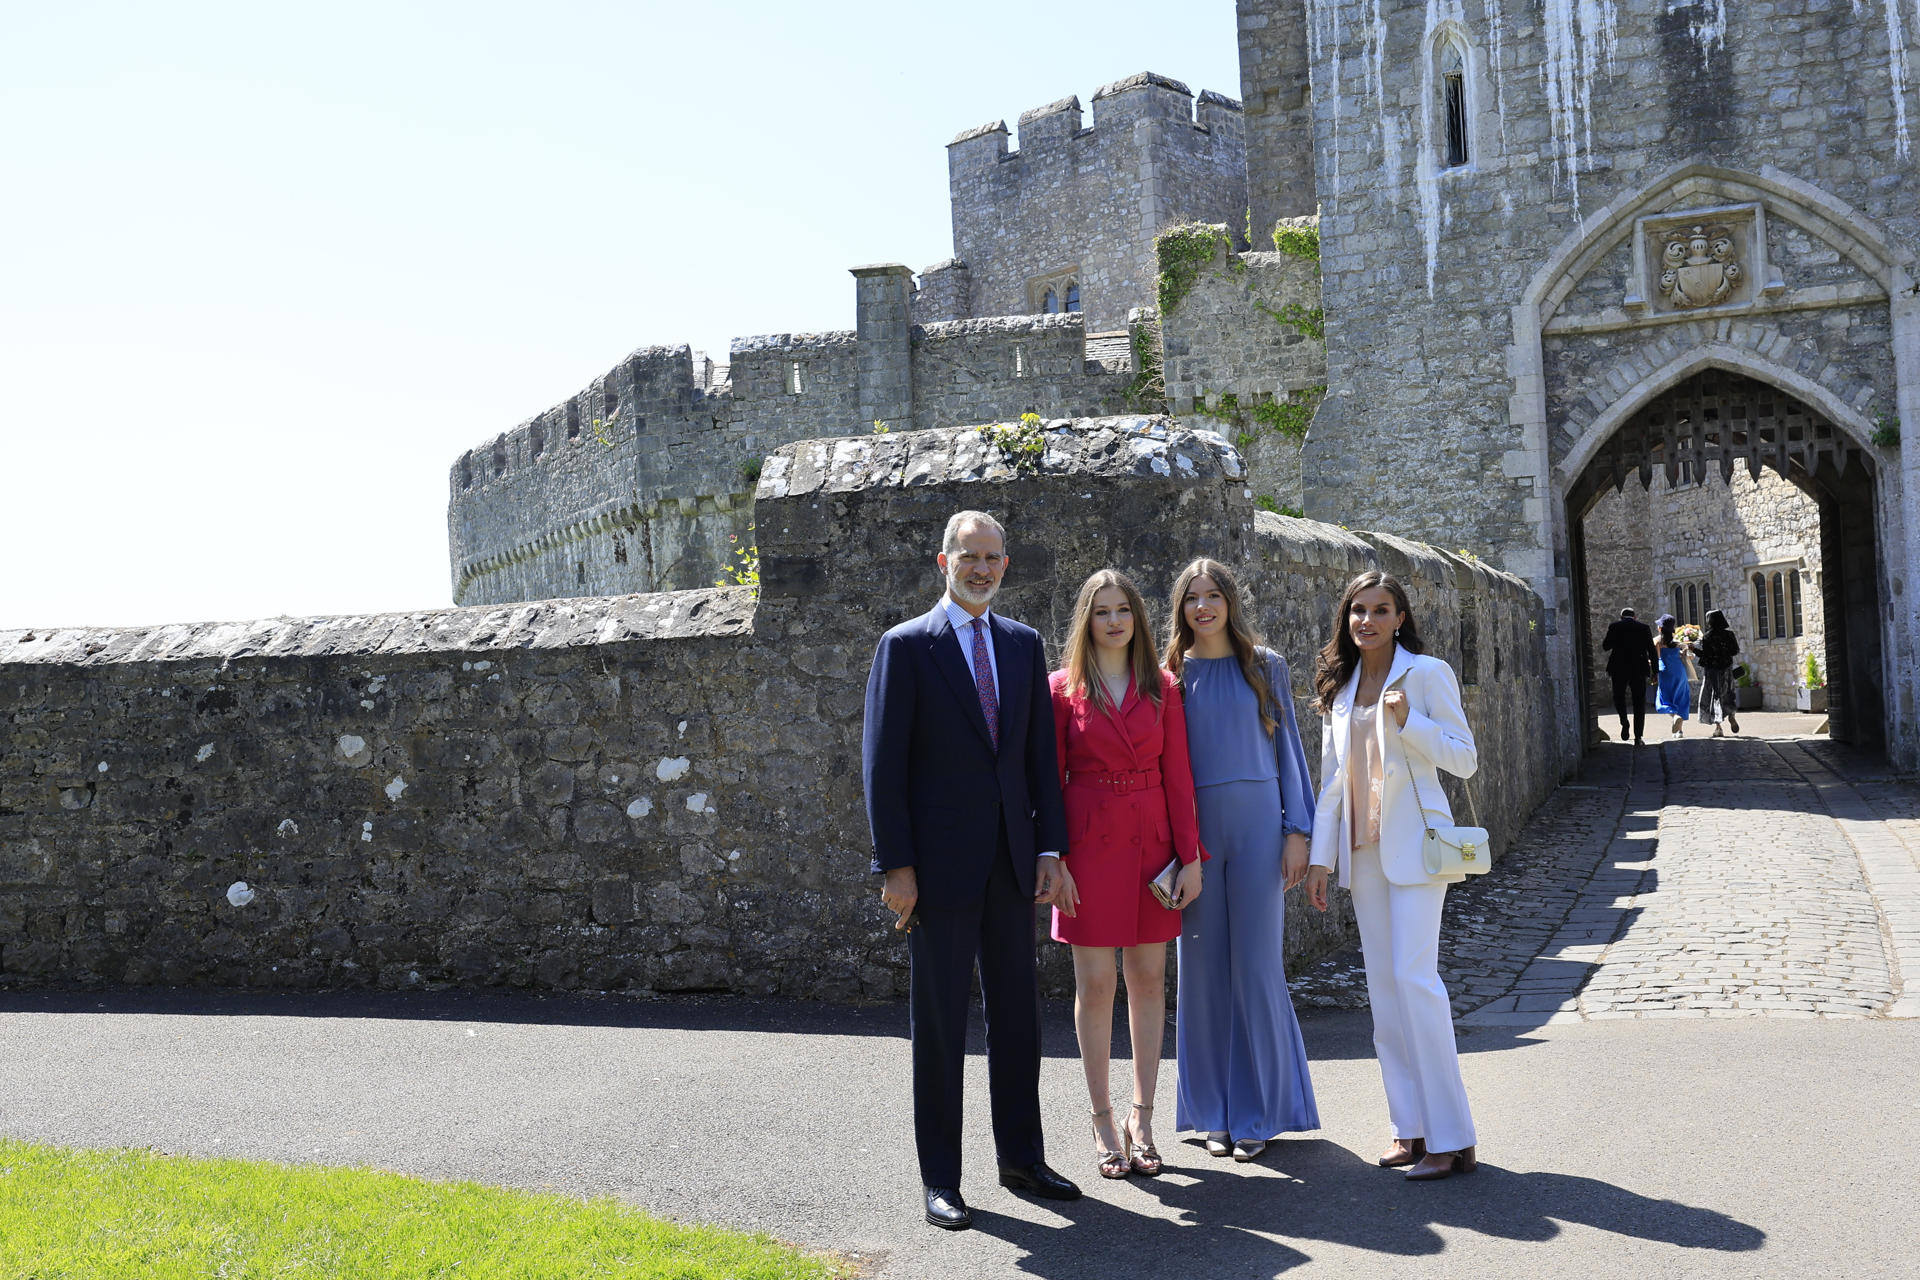 Los Reyes Felipe y Letizia posan junto a sus hijas la princesa Leonor y la infanta Sofía, momentos antes de asistir al acto de graduación de la Princesa de Asturias, con el que concluye este sábado su estancia de dos años en el UWC Atlantic College de Gales